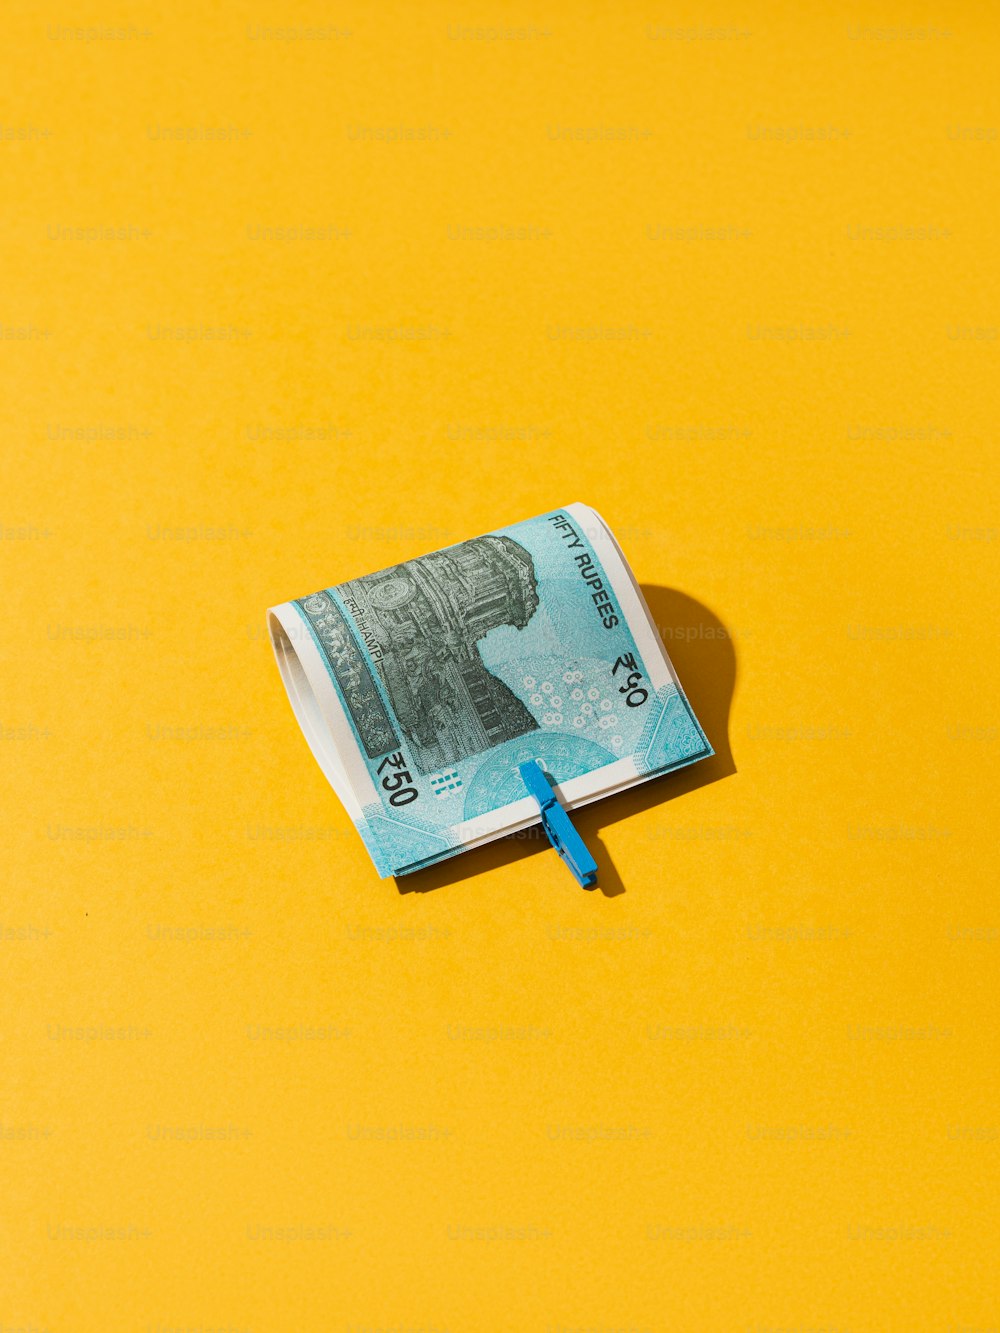 100달러짜리 지폐가 노란 표면에 놓여 있다